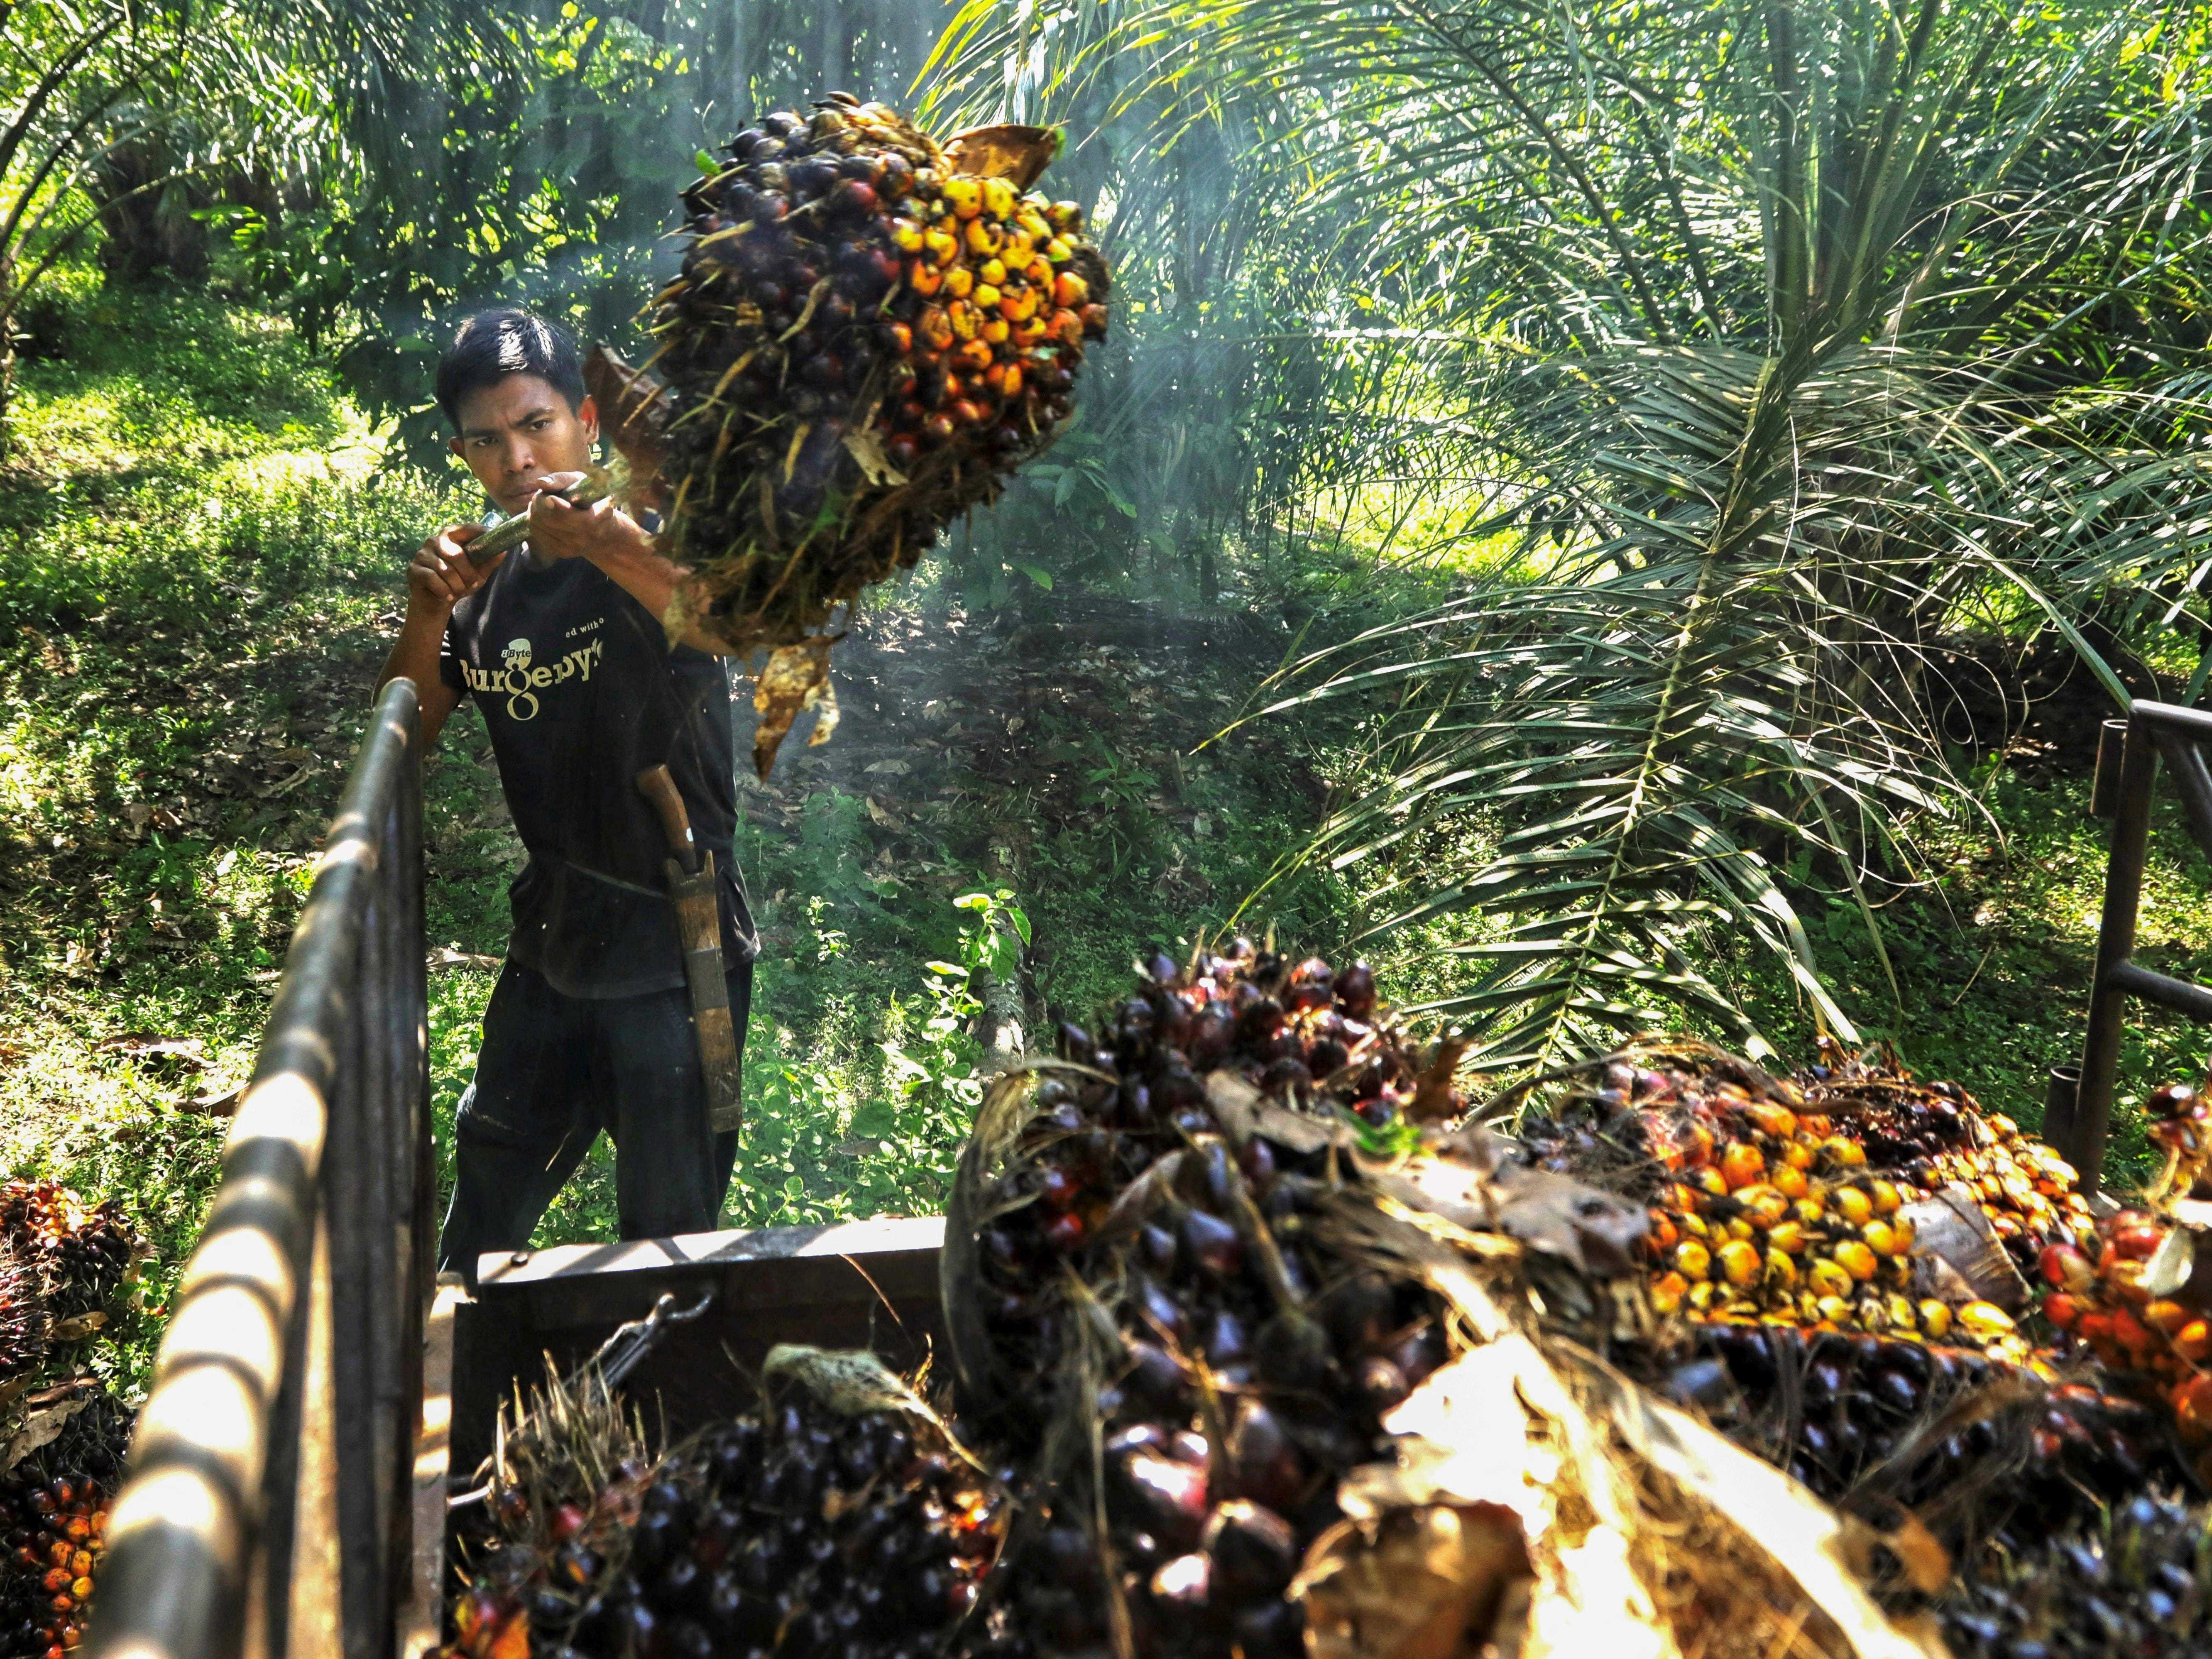 Ein Arbeiter erntet am 24. September 2021 auf einer Plantage in Kutamakmur, Aceh, Ölpalmenfrüchte, die zur Herstellung von Palmöl verwendet werden.